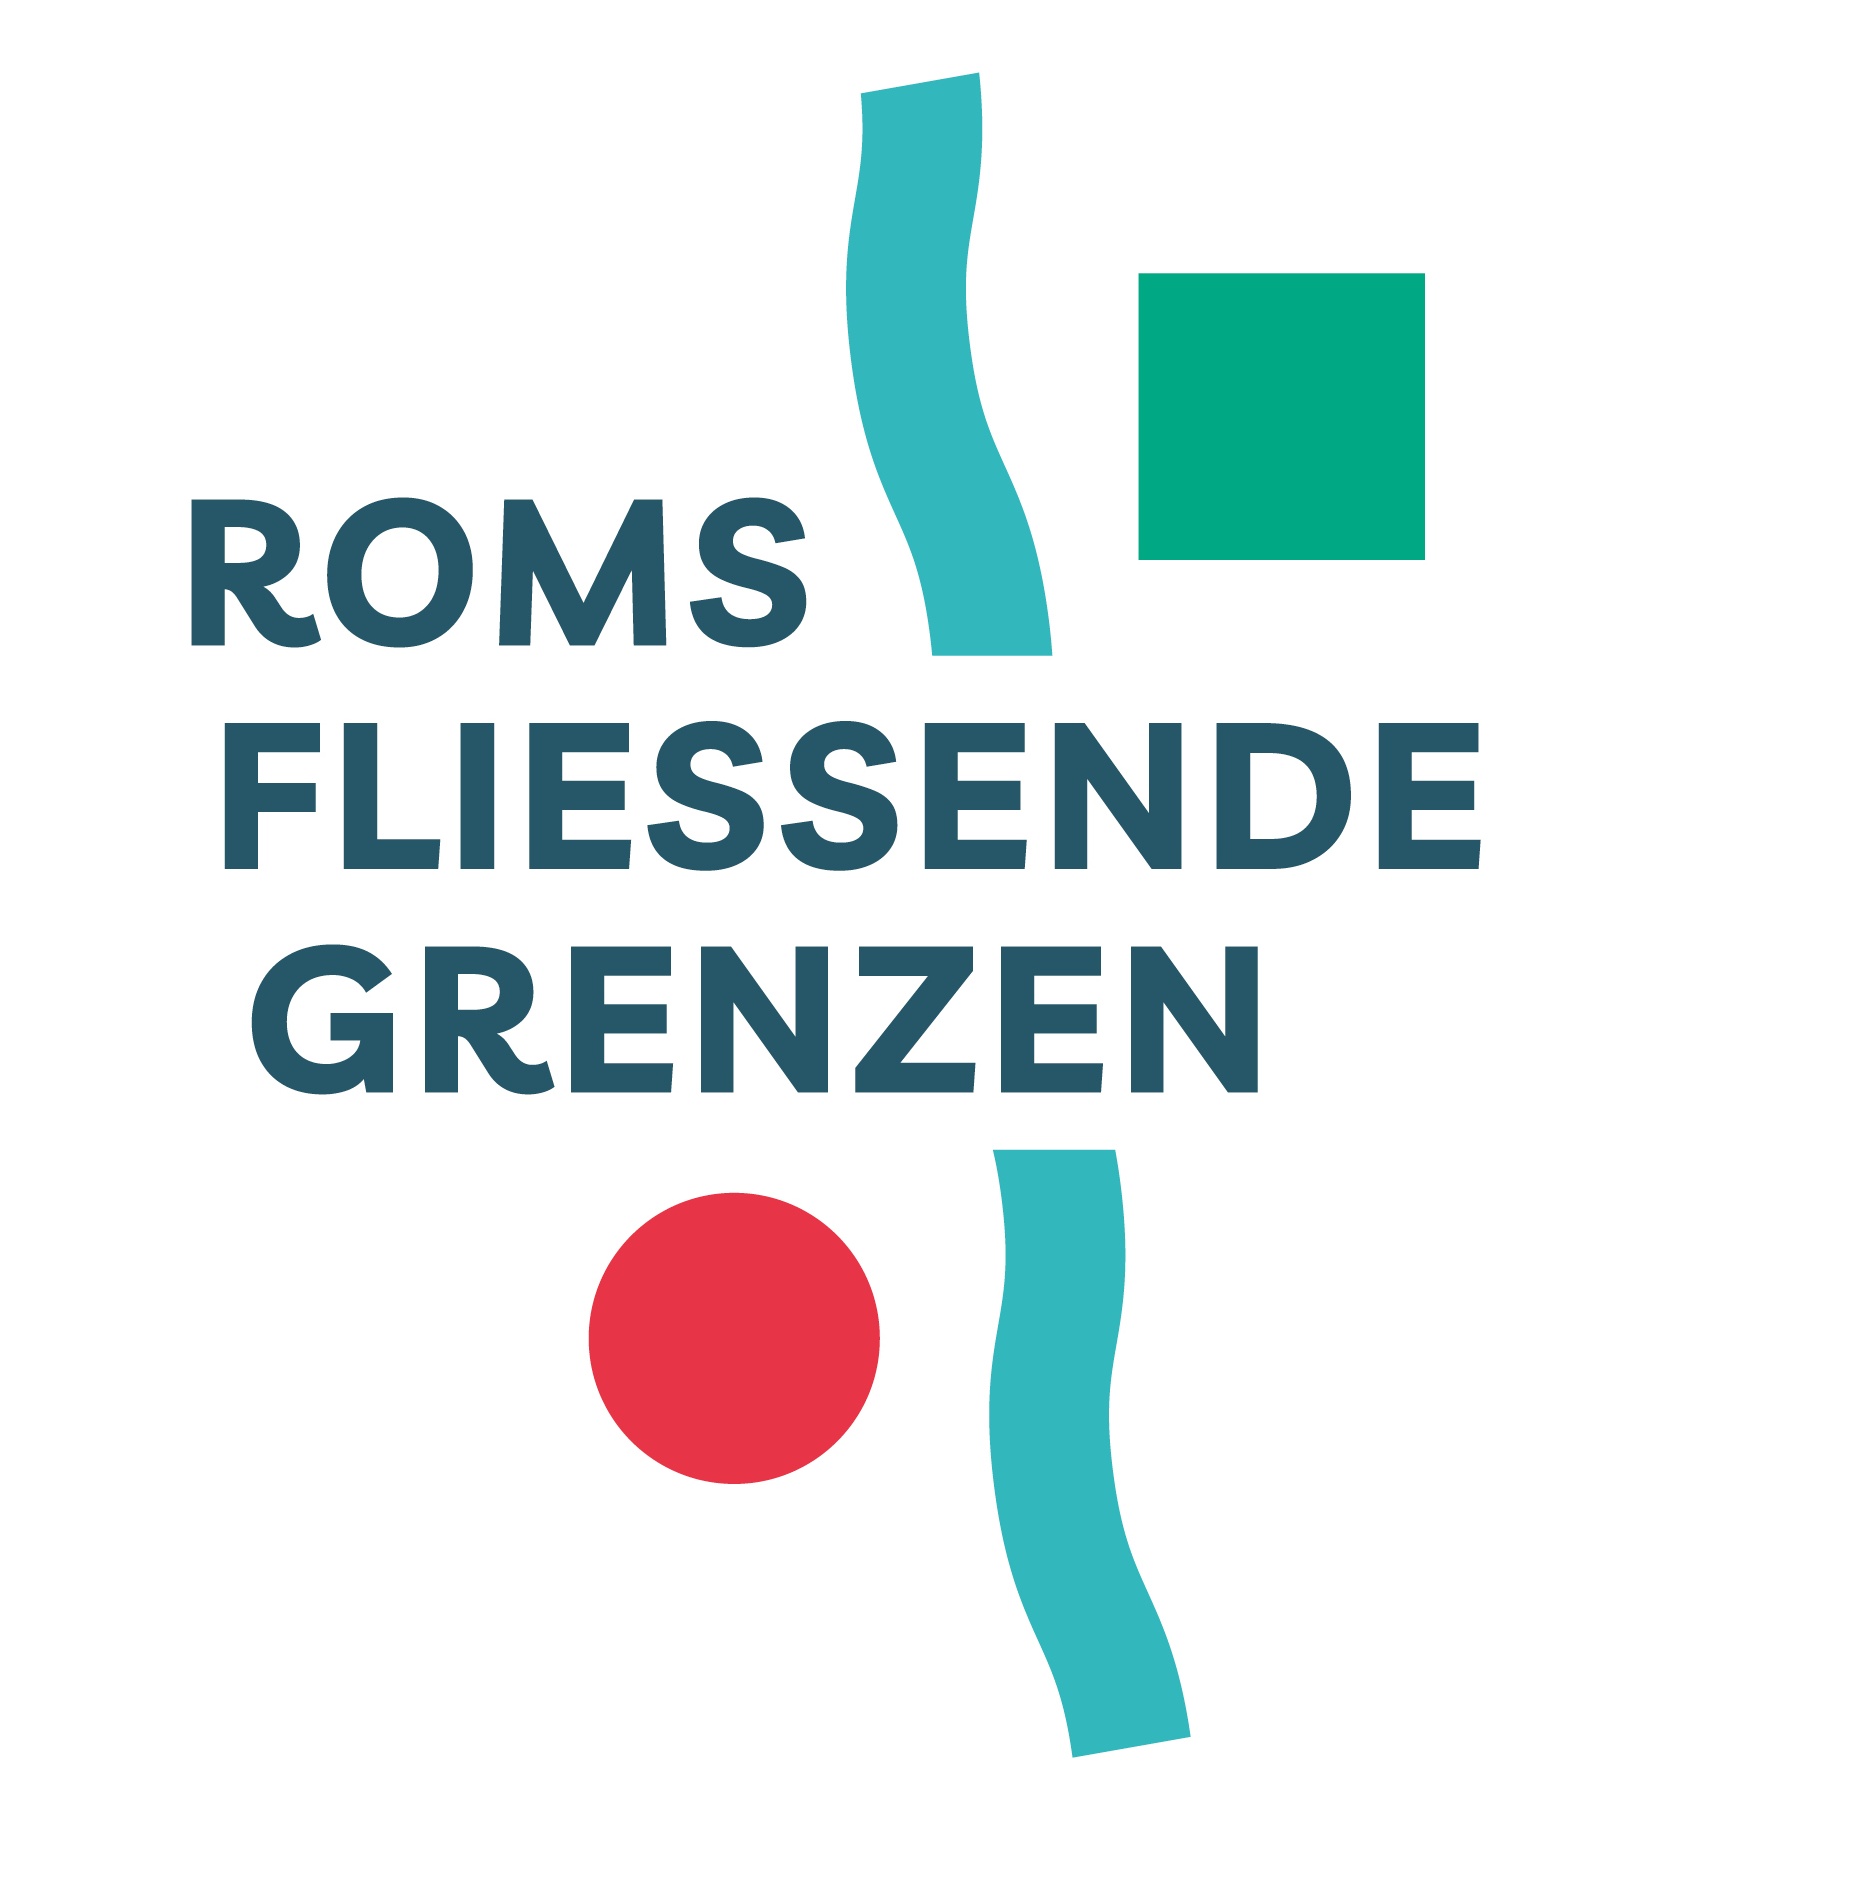 Die Wort-Bild-Marke "Roms fließende Grenzen" mit einem roten Kreis unten links, einer hellblauen längs verlaufenden geschlängelten Linie mittig und einem grün-türkisfarbenen Quadrat oben rechts 